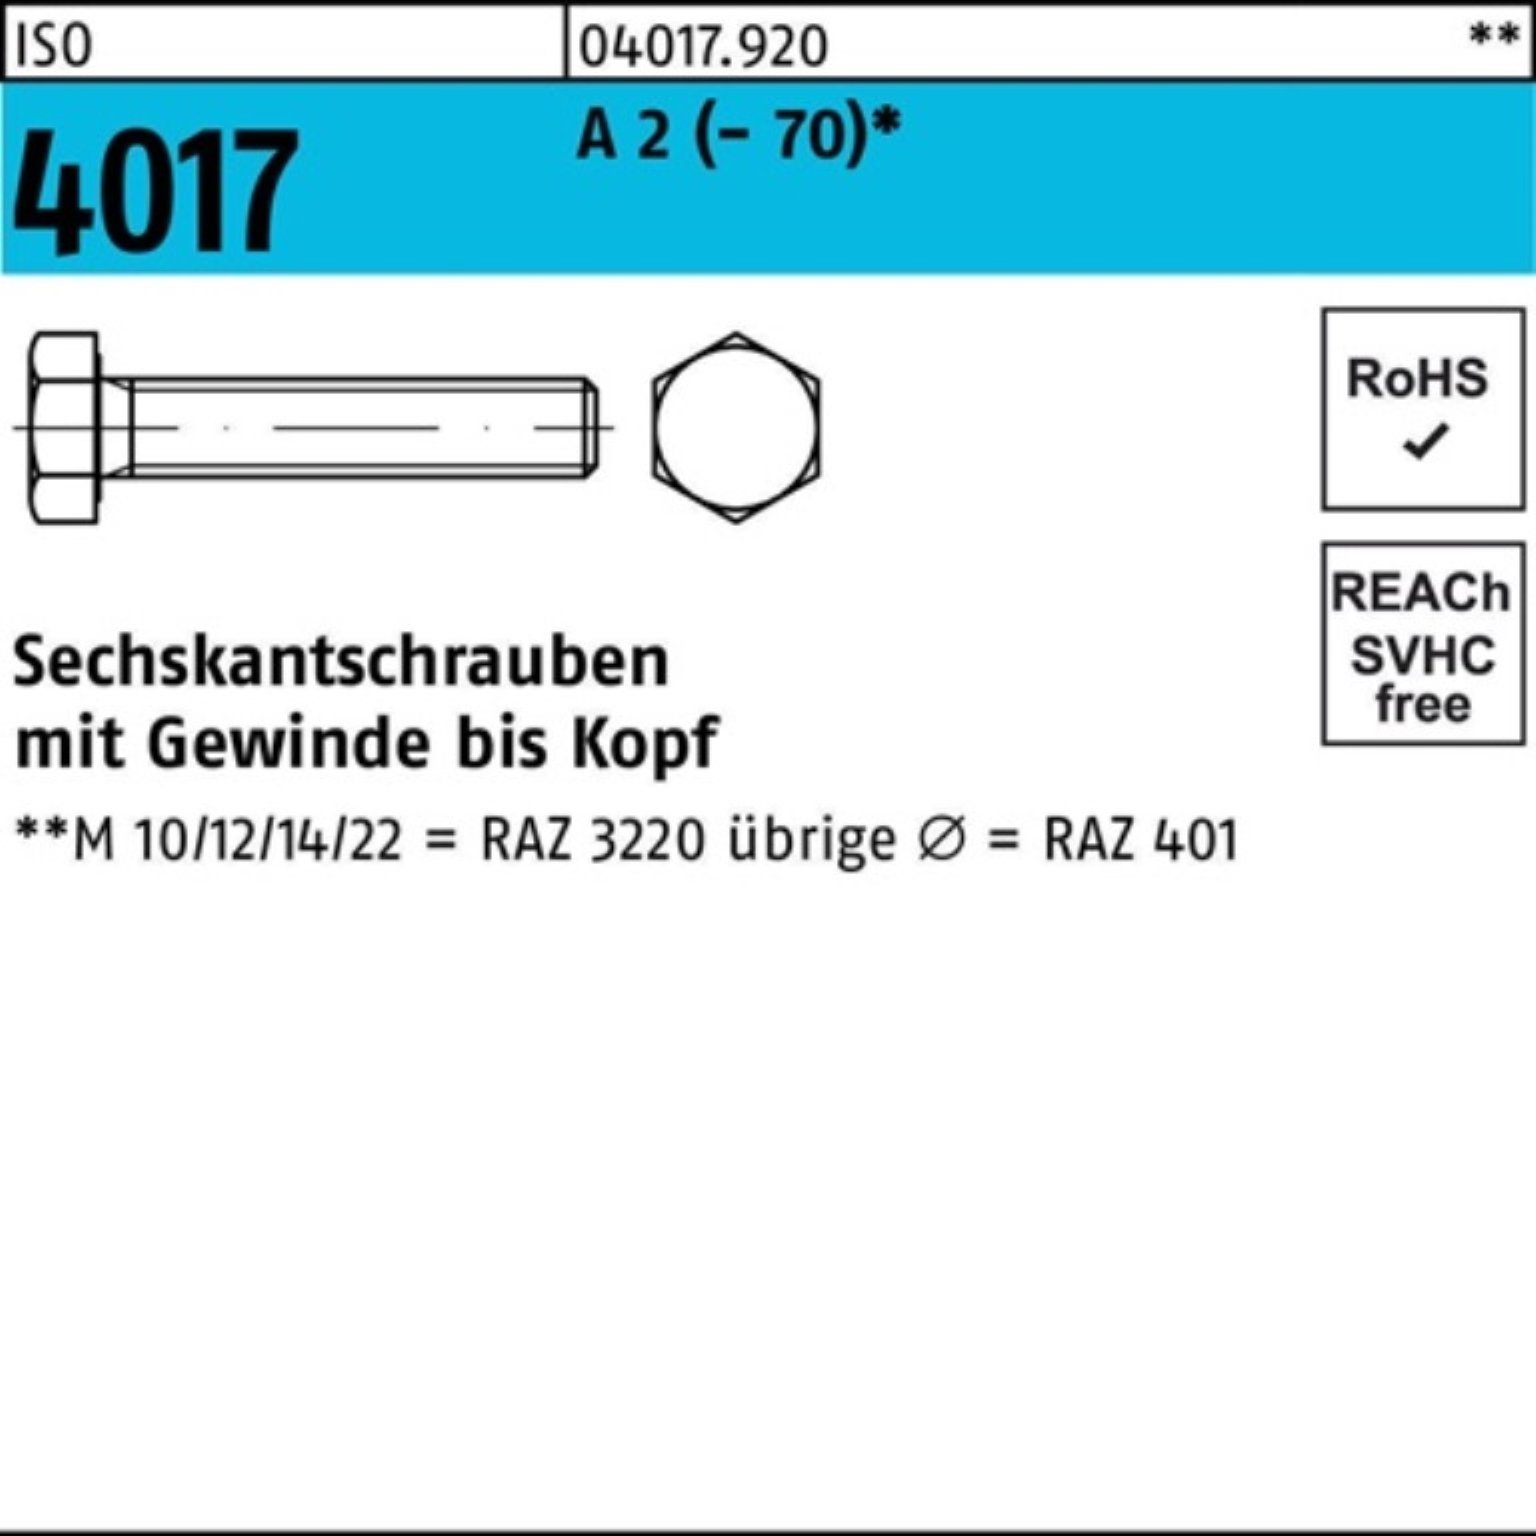 [Shop zum Verkauf mit dem niedrigsten Preis] Bufab Sechskantschraube 100er Stück Pack 55 2 4017 25 ISO Sechskantschraube M18x (70) A VG